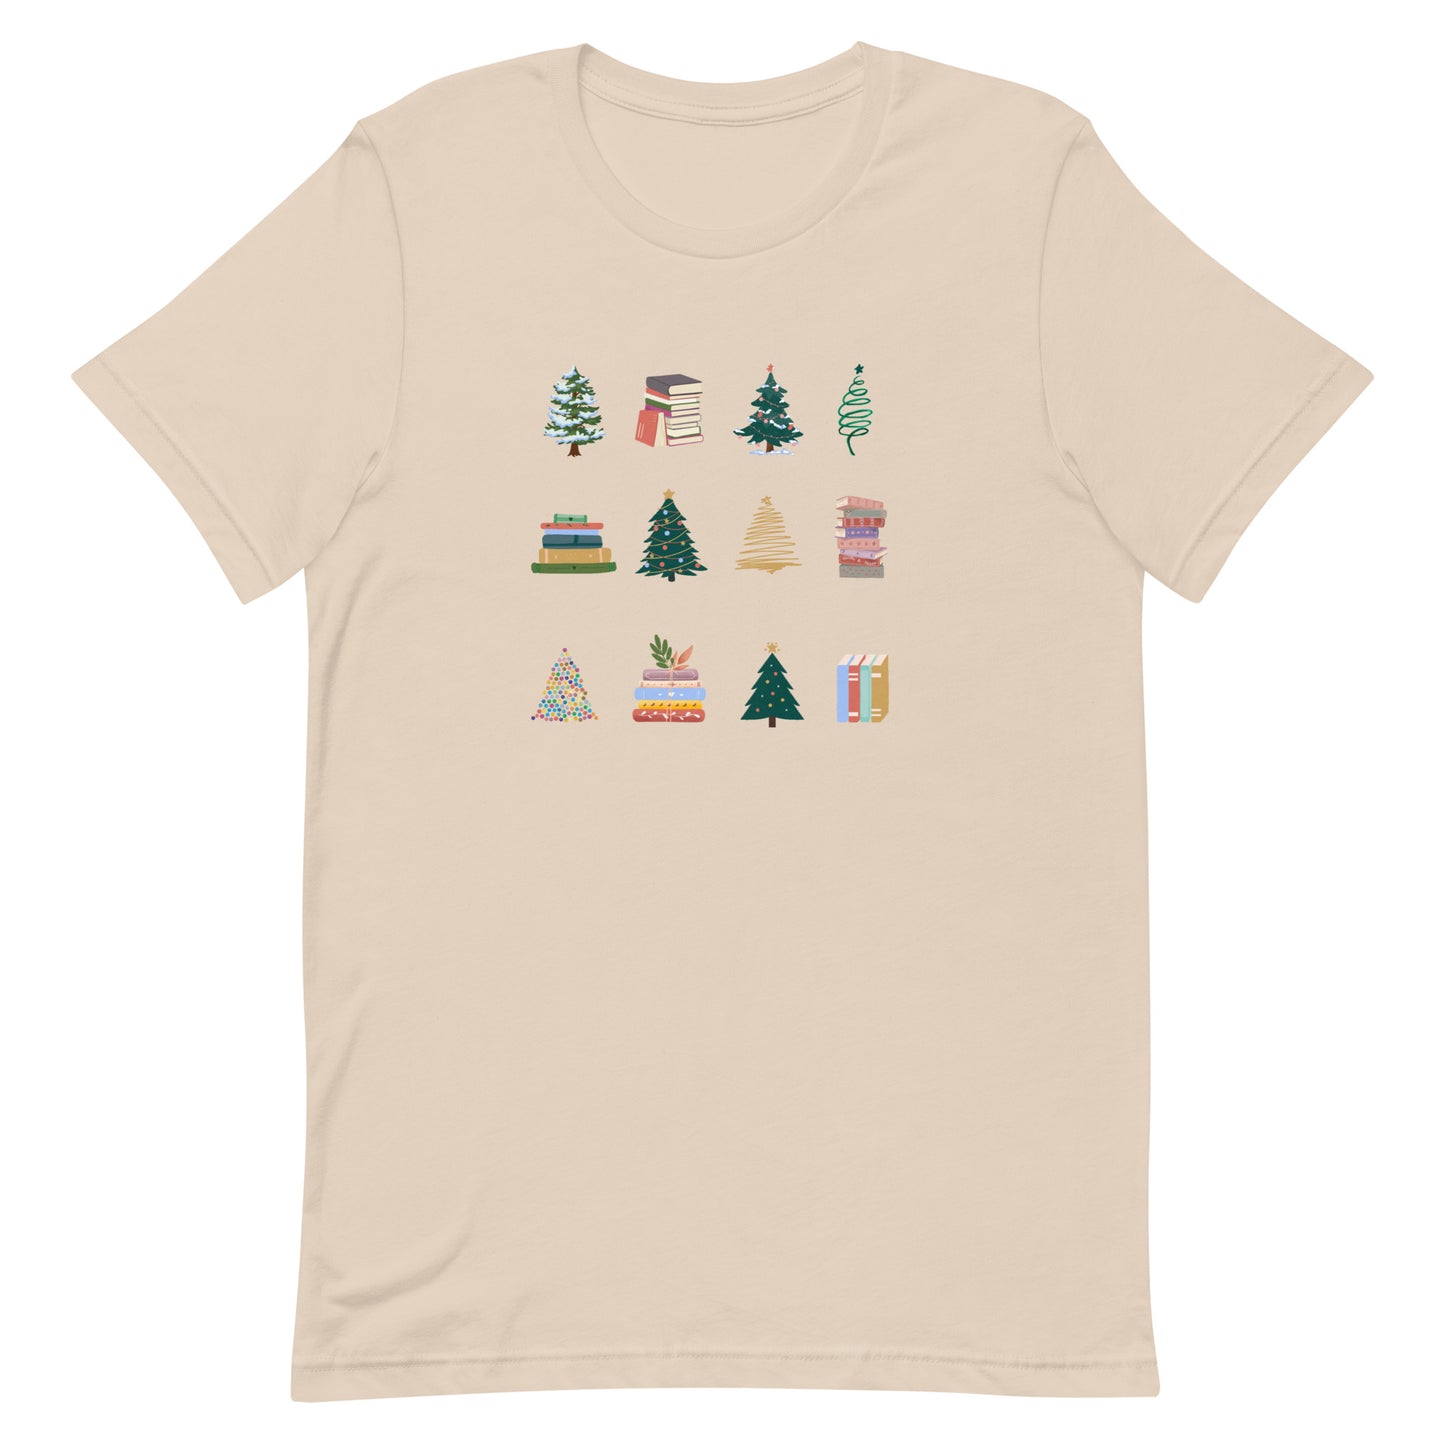 trees & books t-shirt